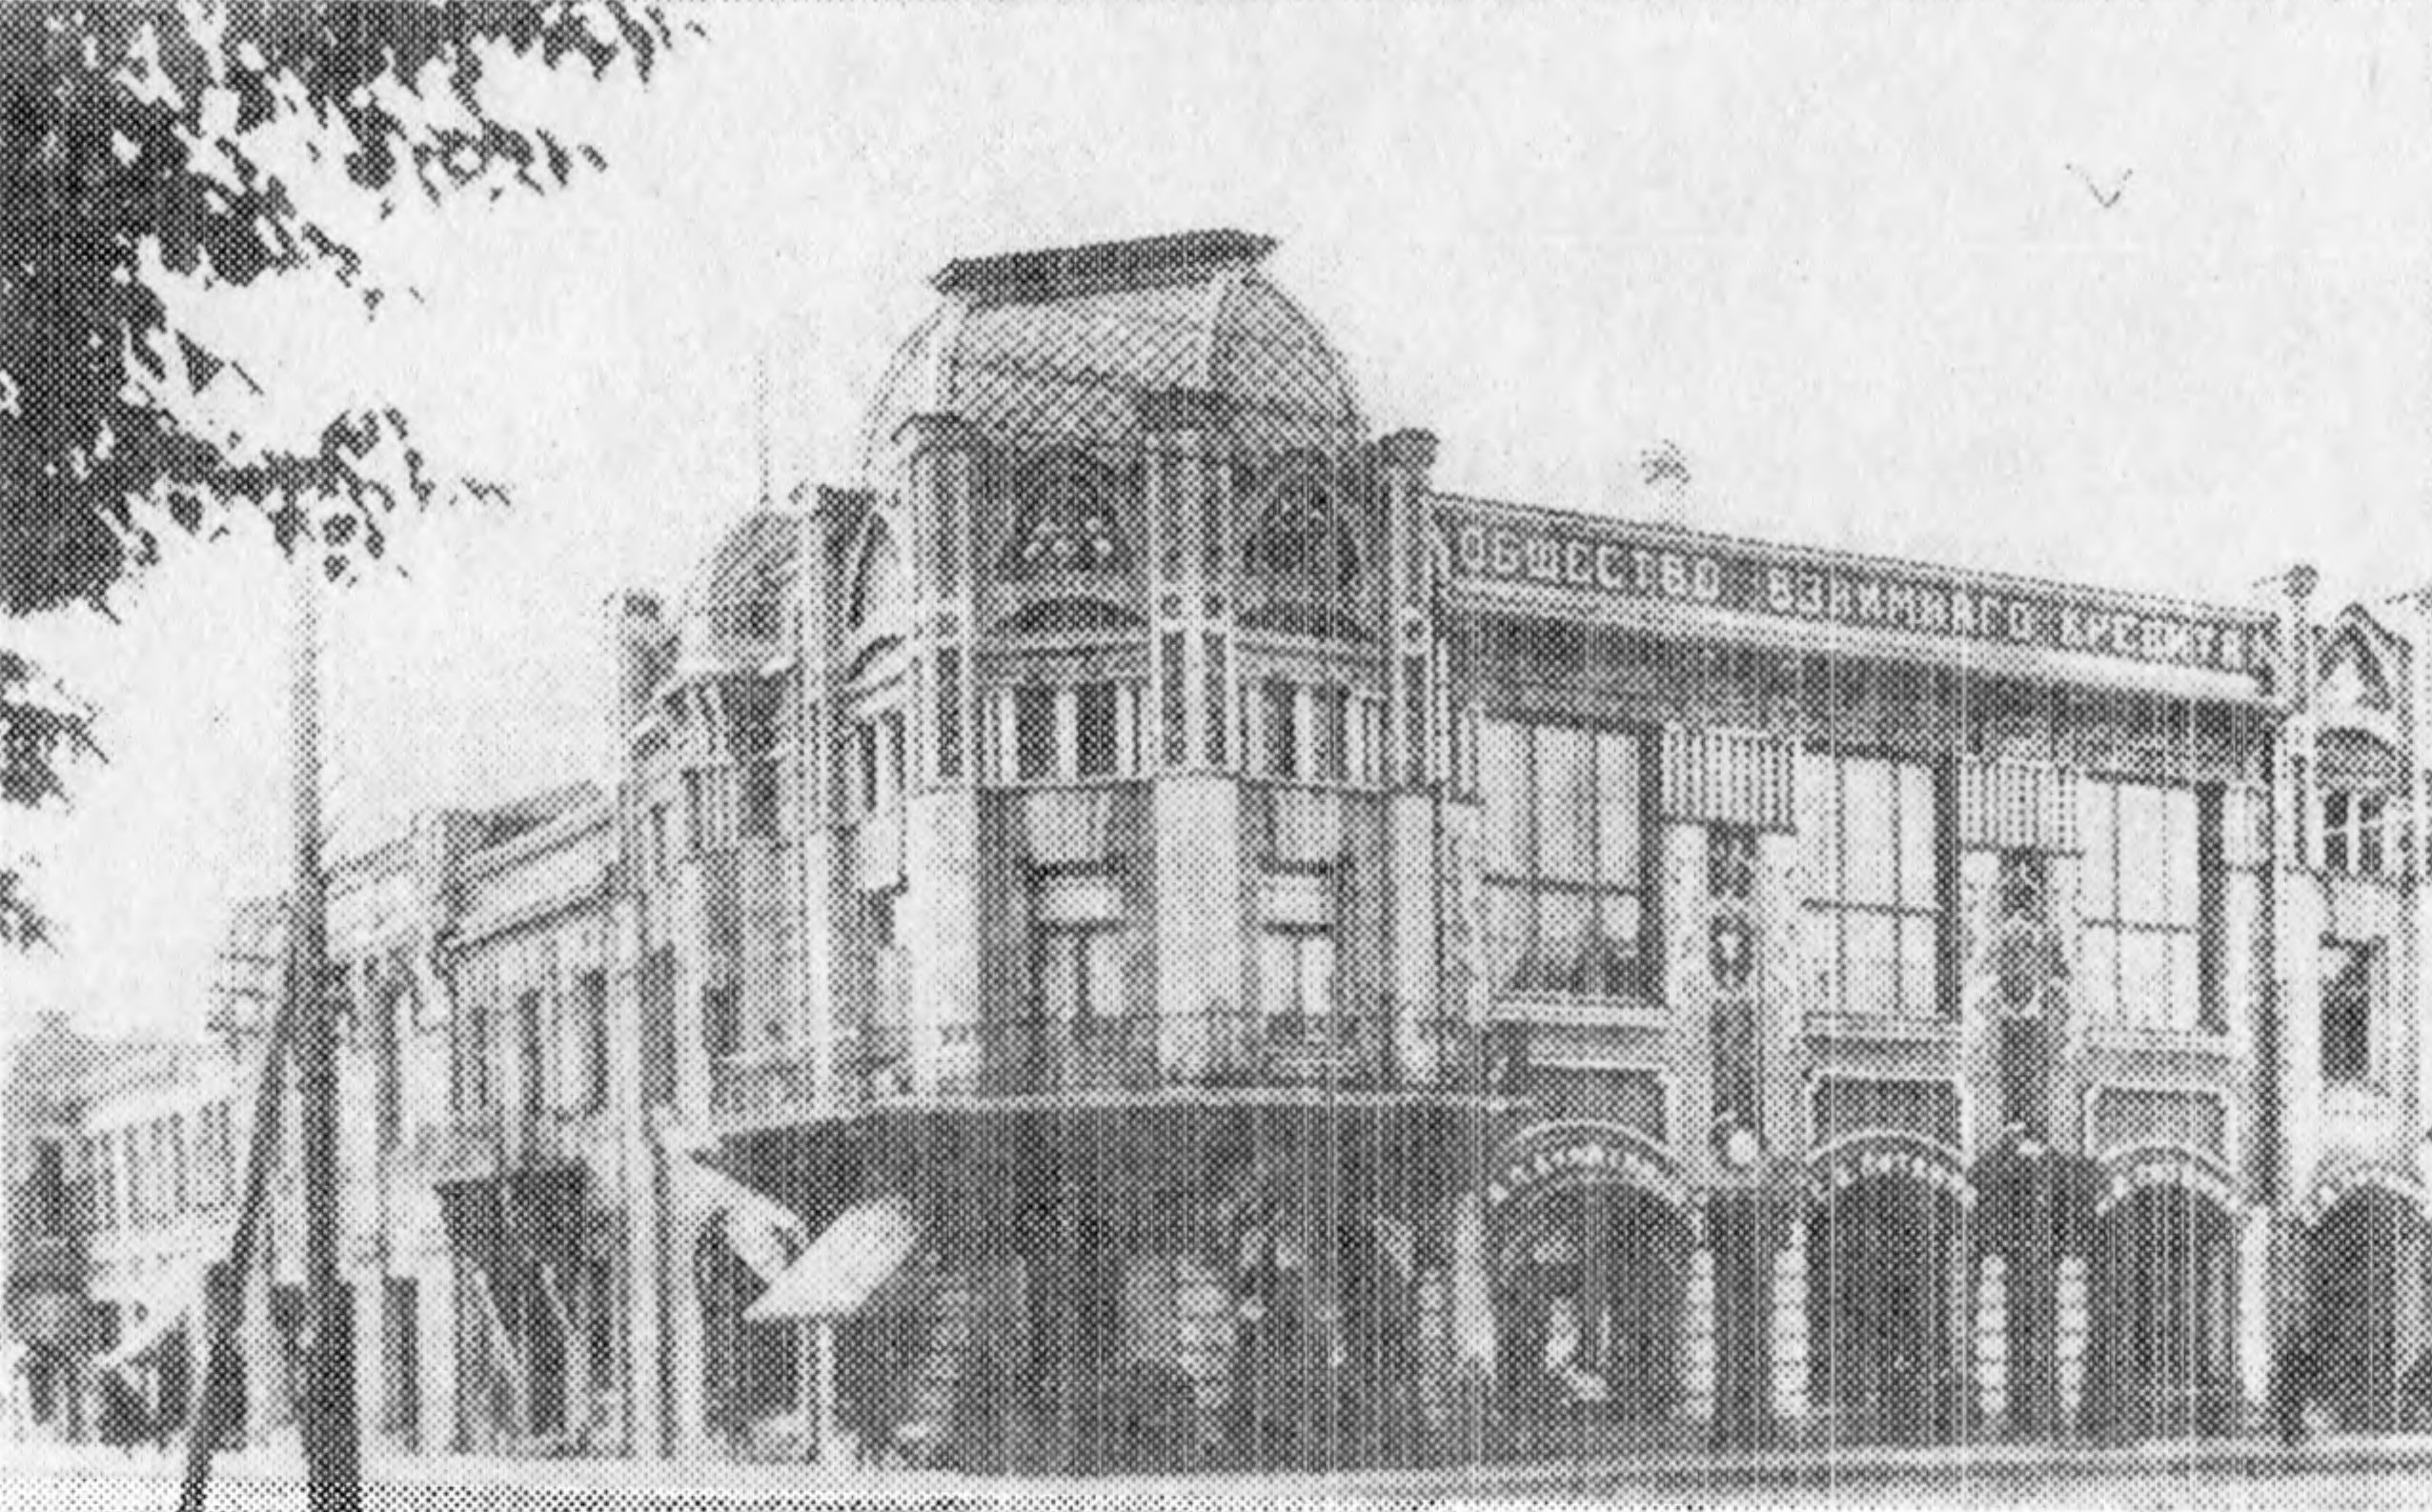 В левом крыле здания по ул. Евдокимовской (М. Горького) находилась редакция газеты «Коммунист» и «свил гнездо» цех местных поэтов